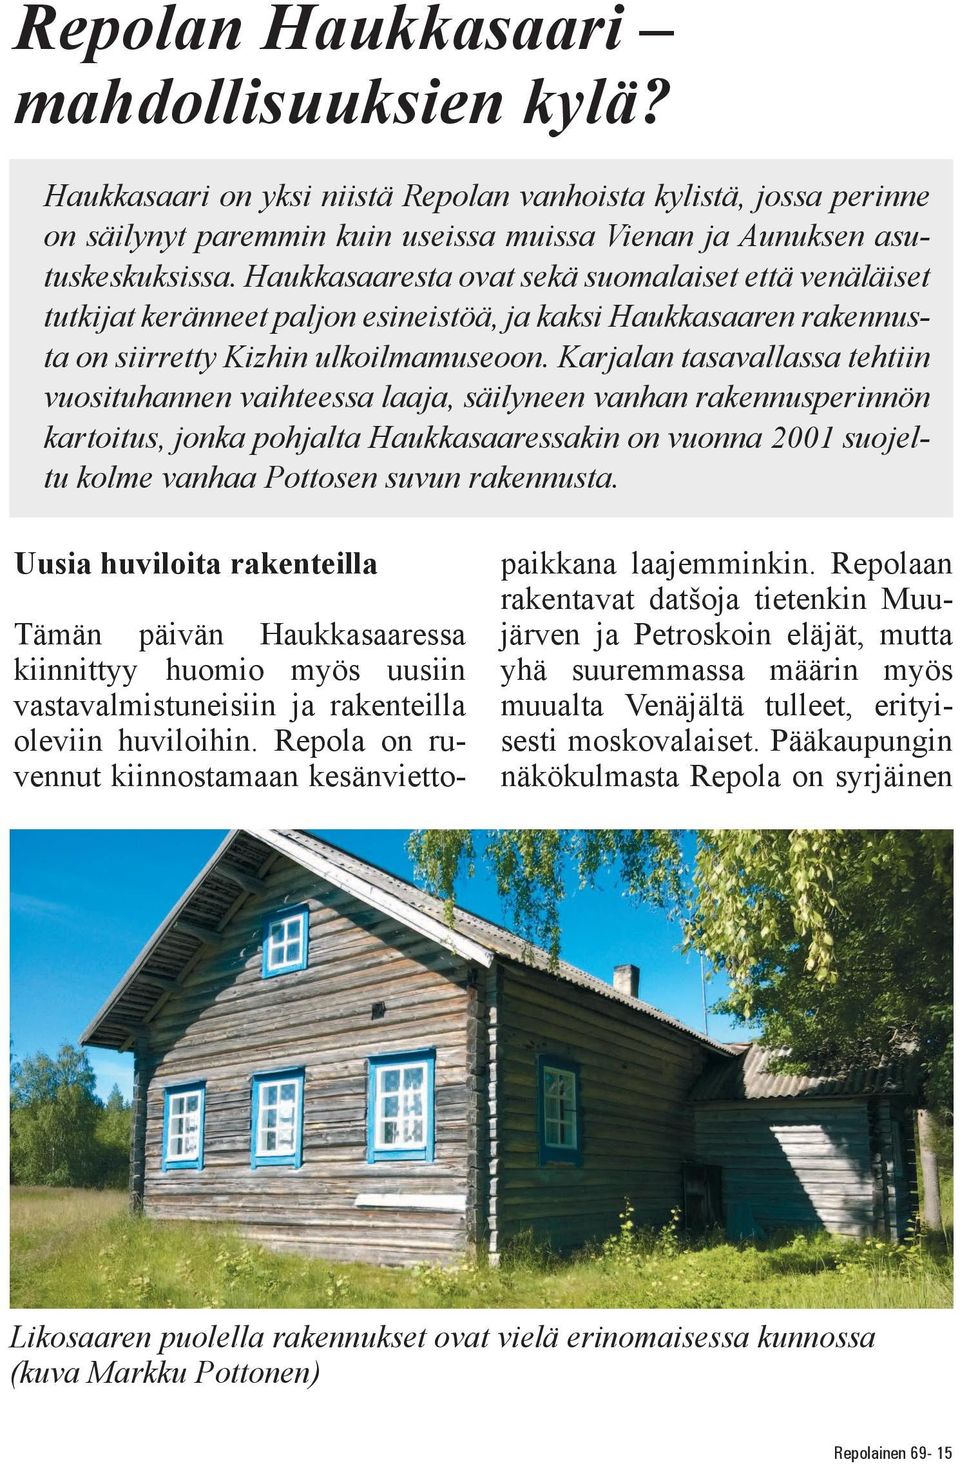 Karjalan tasavallassa tehtiin vuosituhannen vaihteessa laaja, säilyneen vanhan rakennusperinnön kartoitus, jonka pohjalta Haukkasaaressakin on vuonna 2001 suojeltu kolme vanhaa Pottosen suvun